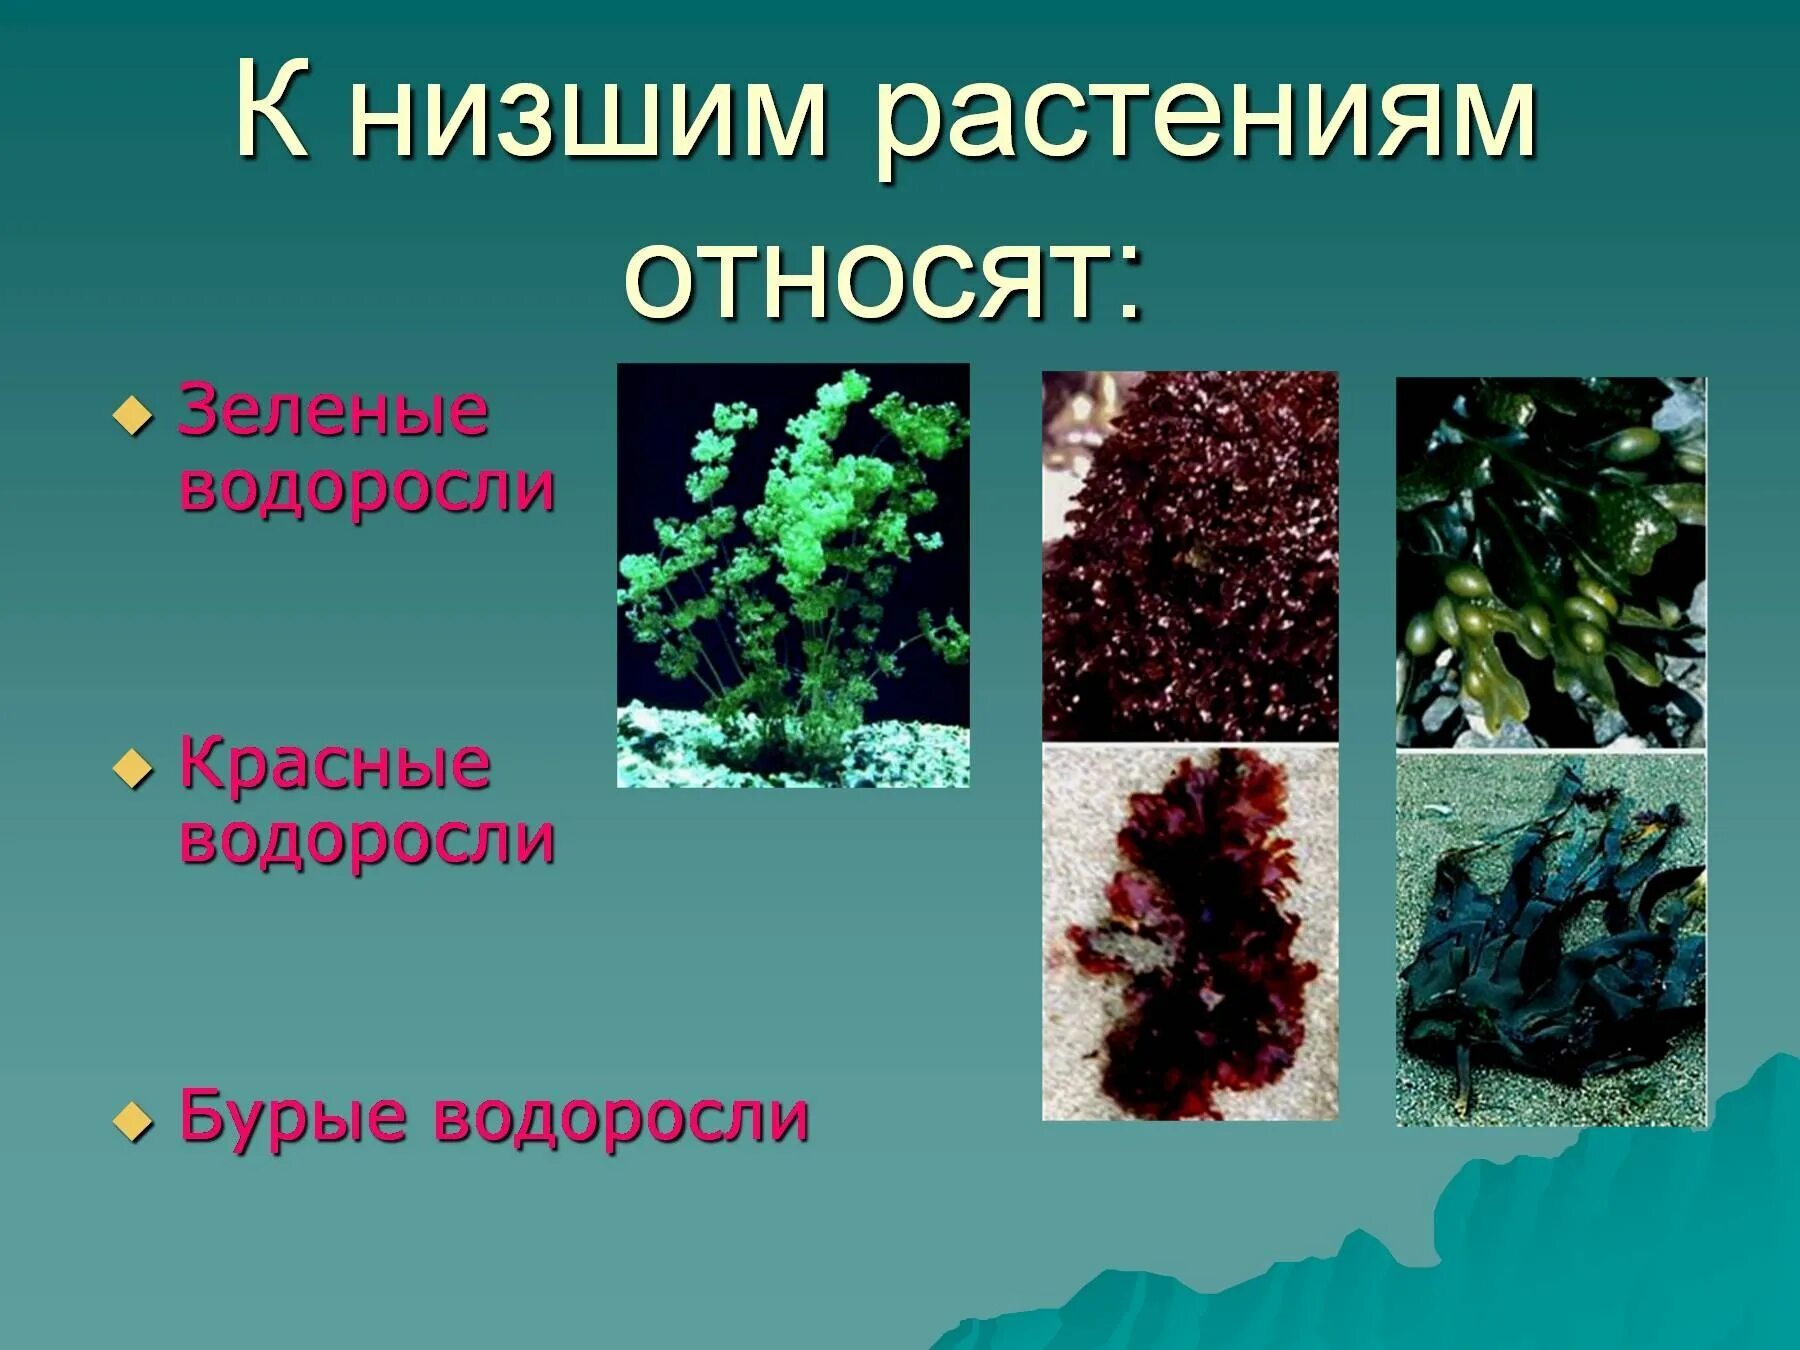 Какие организмы относят к бурым водорослям. Низшие растения. Растения которые относятся к низшим. Низкие растения. Название низших растений.